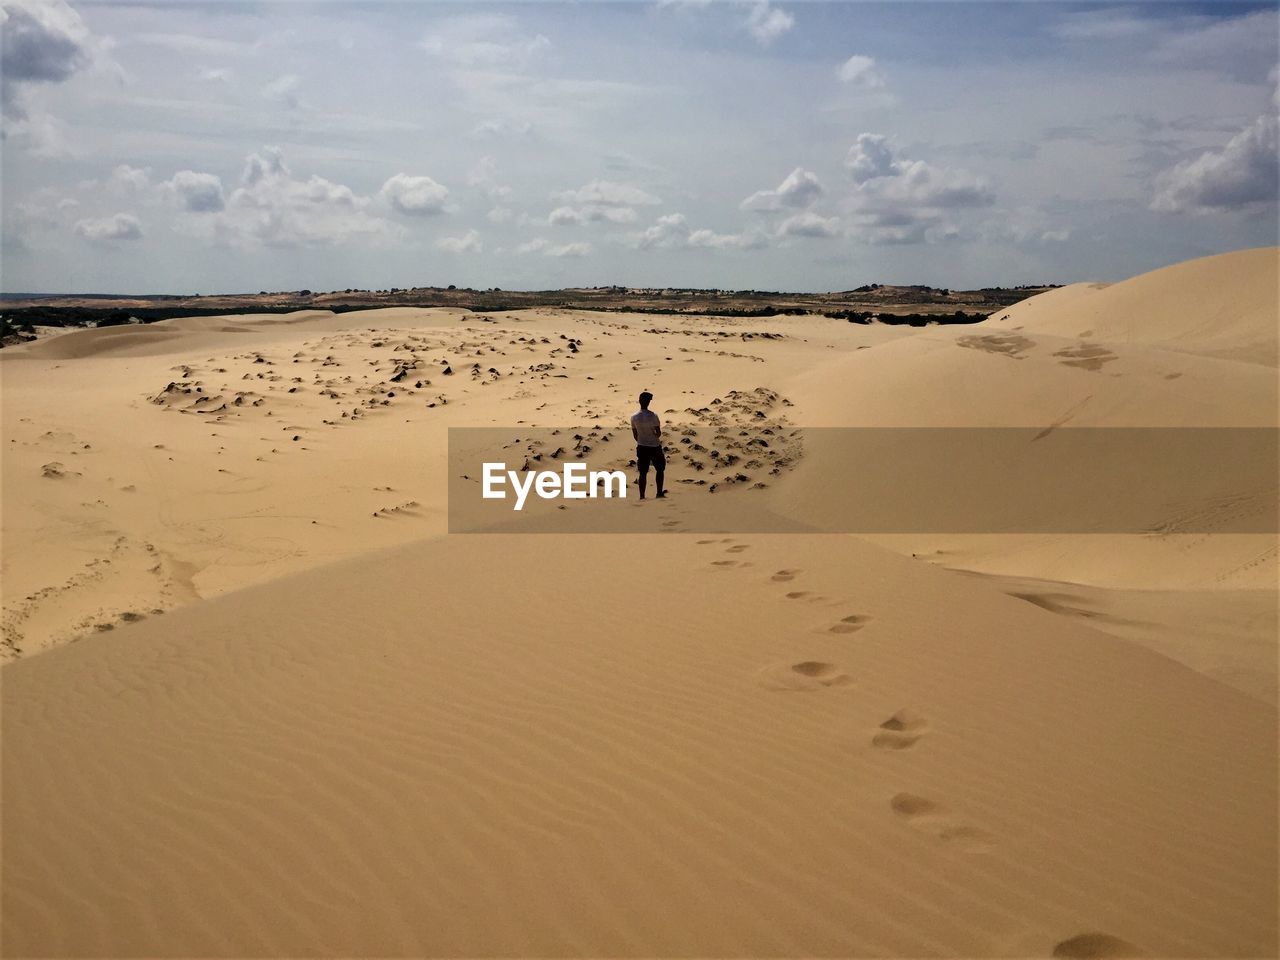 Vietnam sand dunes 